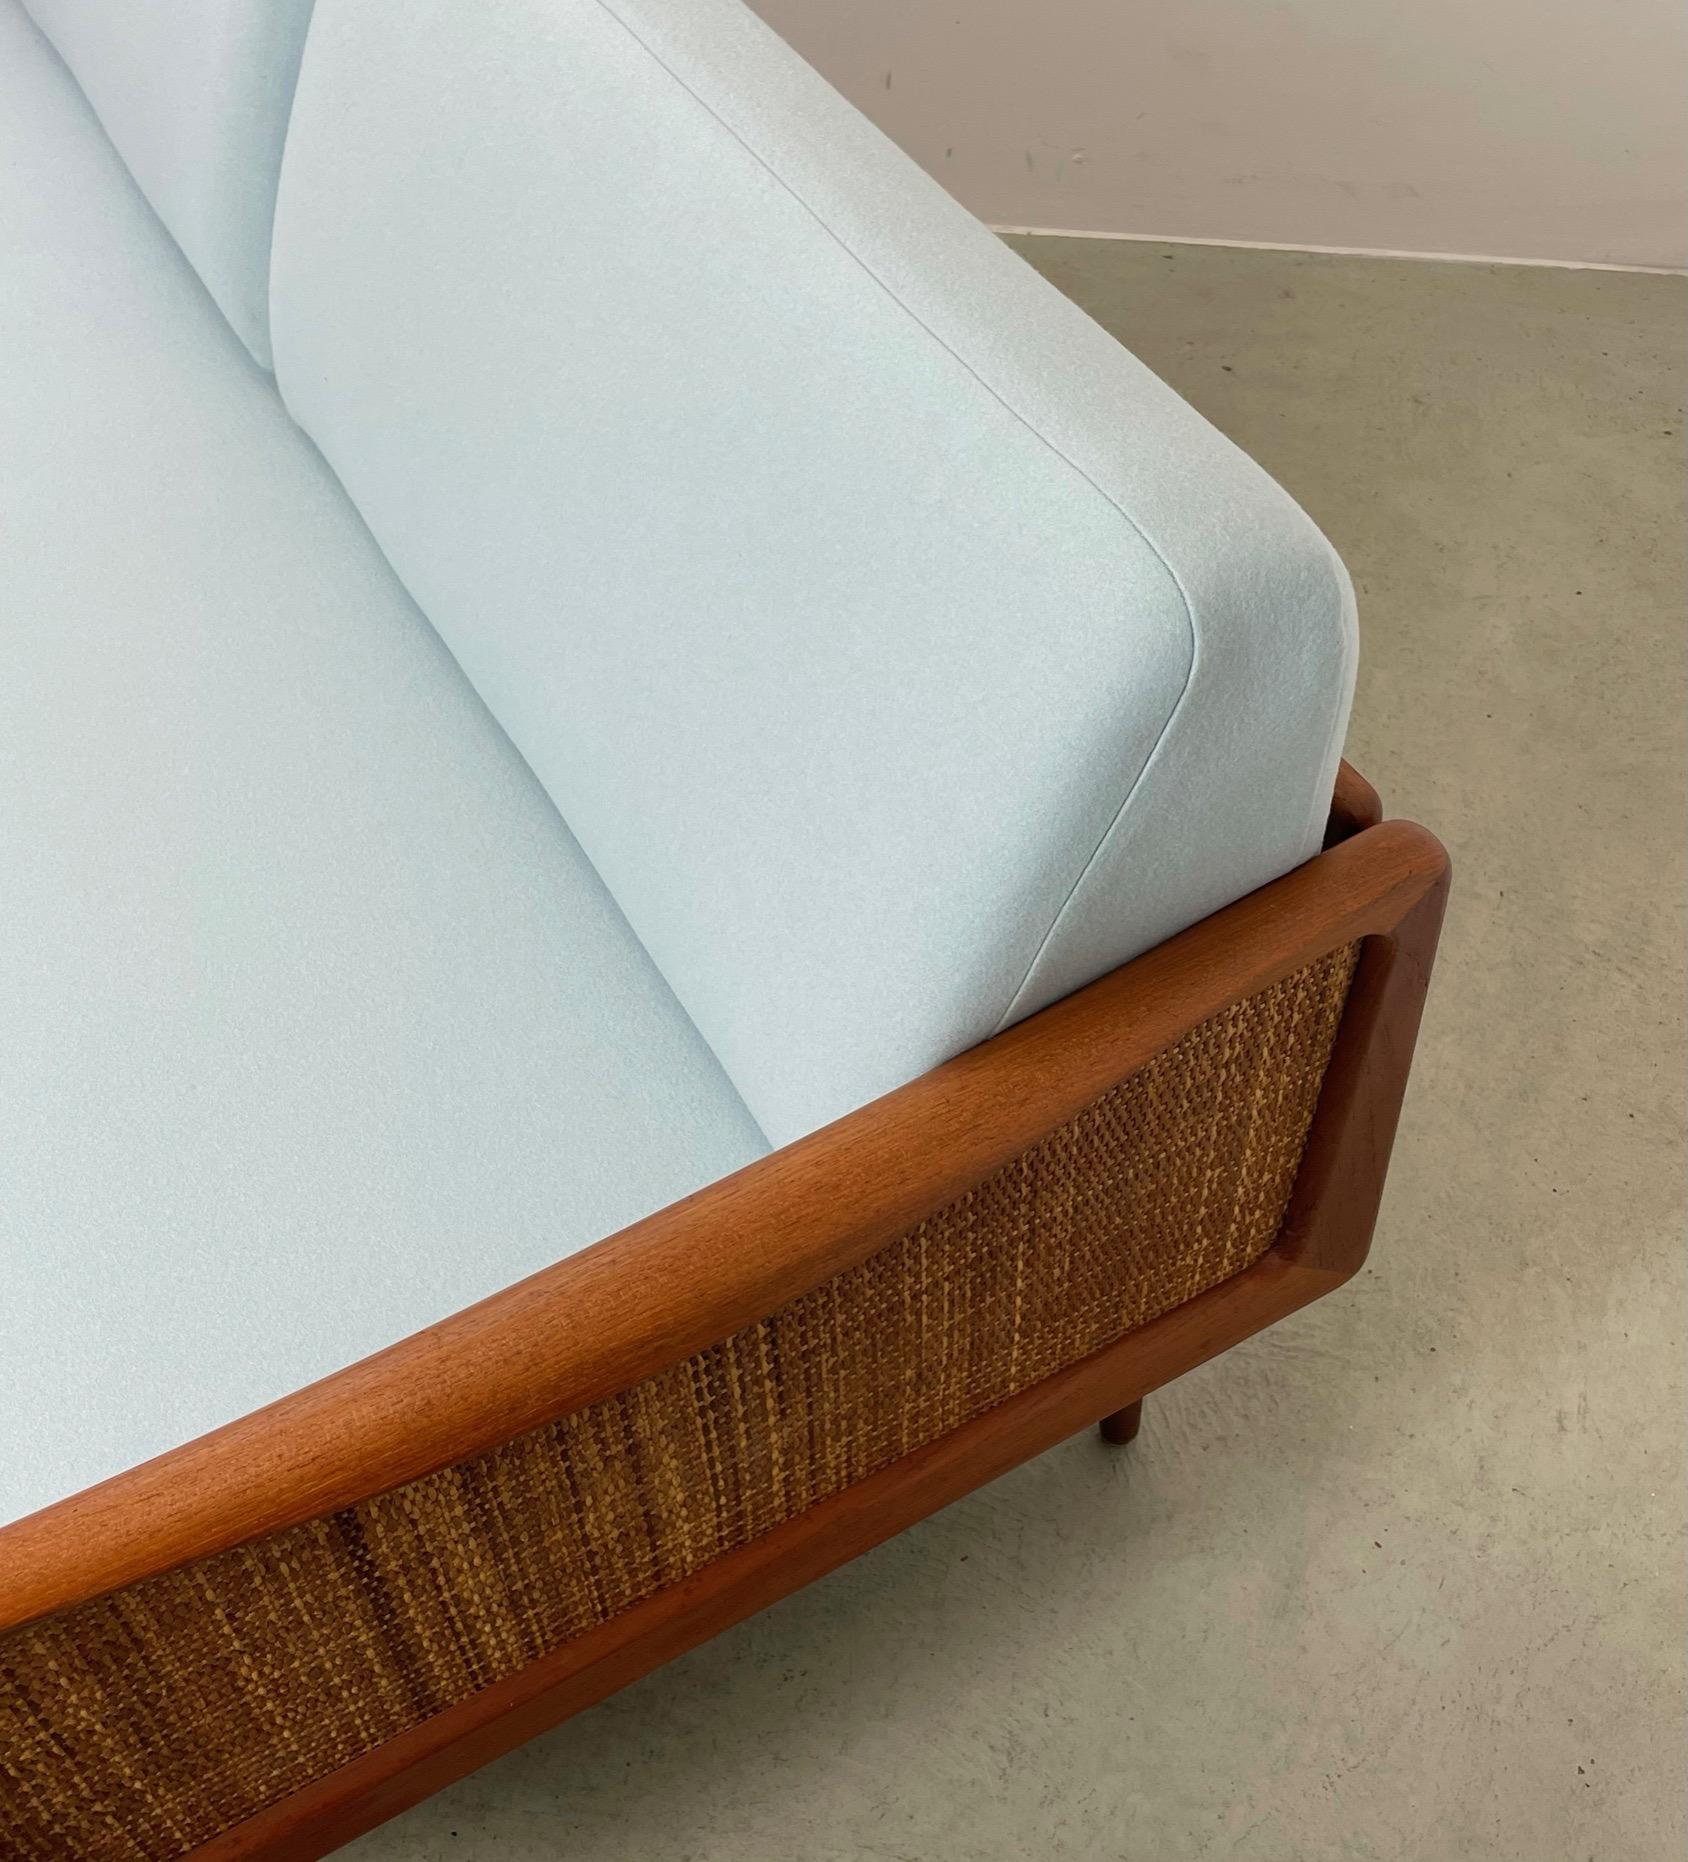 Ein seltenes 2-Sitzer-Sofa und Daybed, entworfen von Peter Hvidt & Orla Mølgaard Nielsen. - Hergestellt in Dänemark von France & Daverkosen in den 1950er Jahren.
Das Modell FD 451 verfügt über einen Teakholzrahmen mit modularen Armlehnen: Mit einem